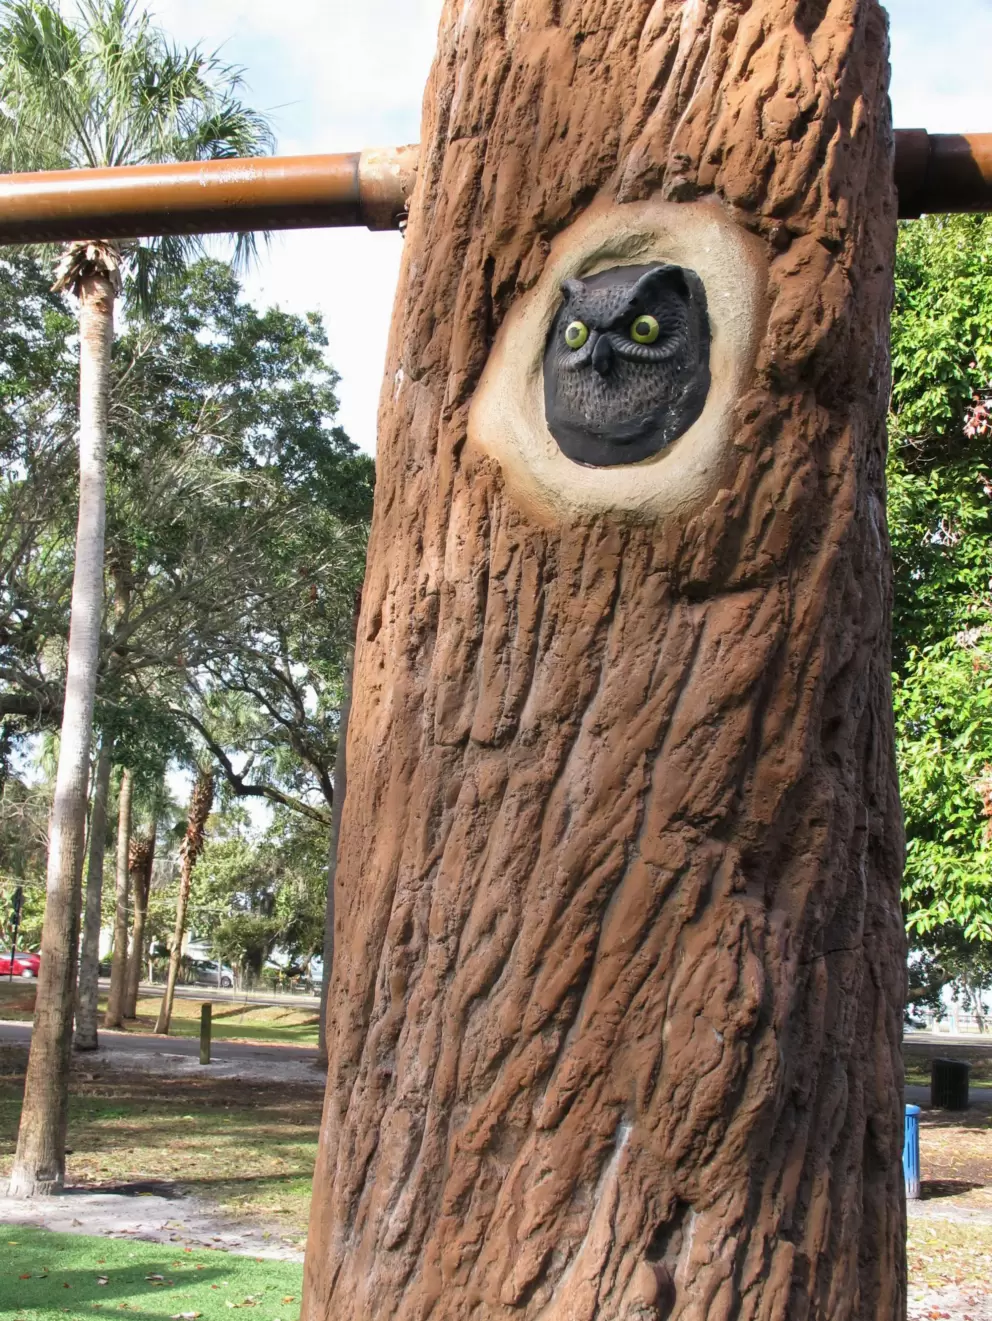 Owl on the swings.